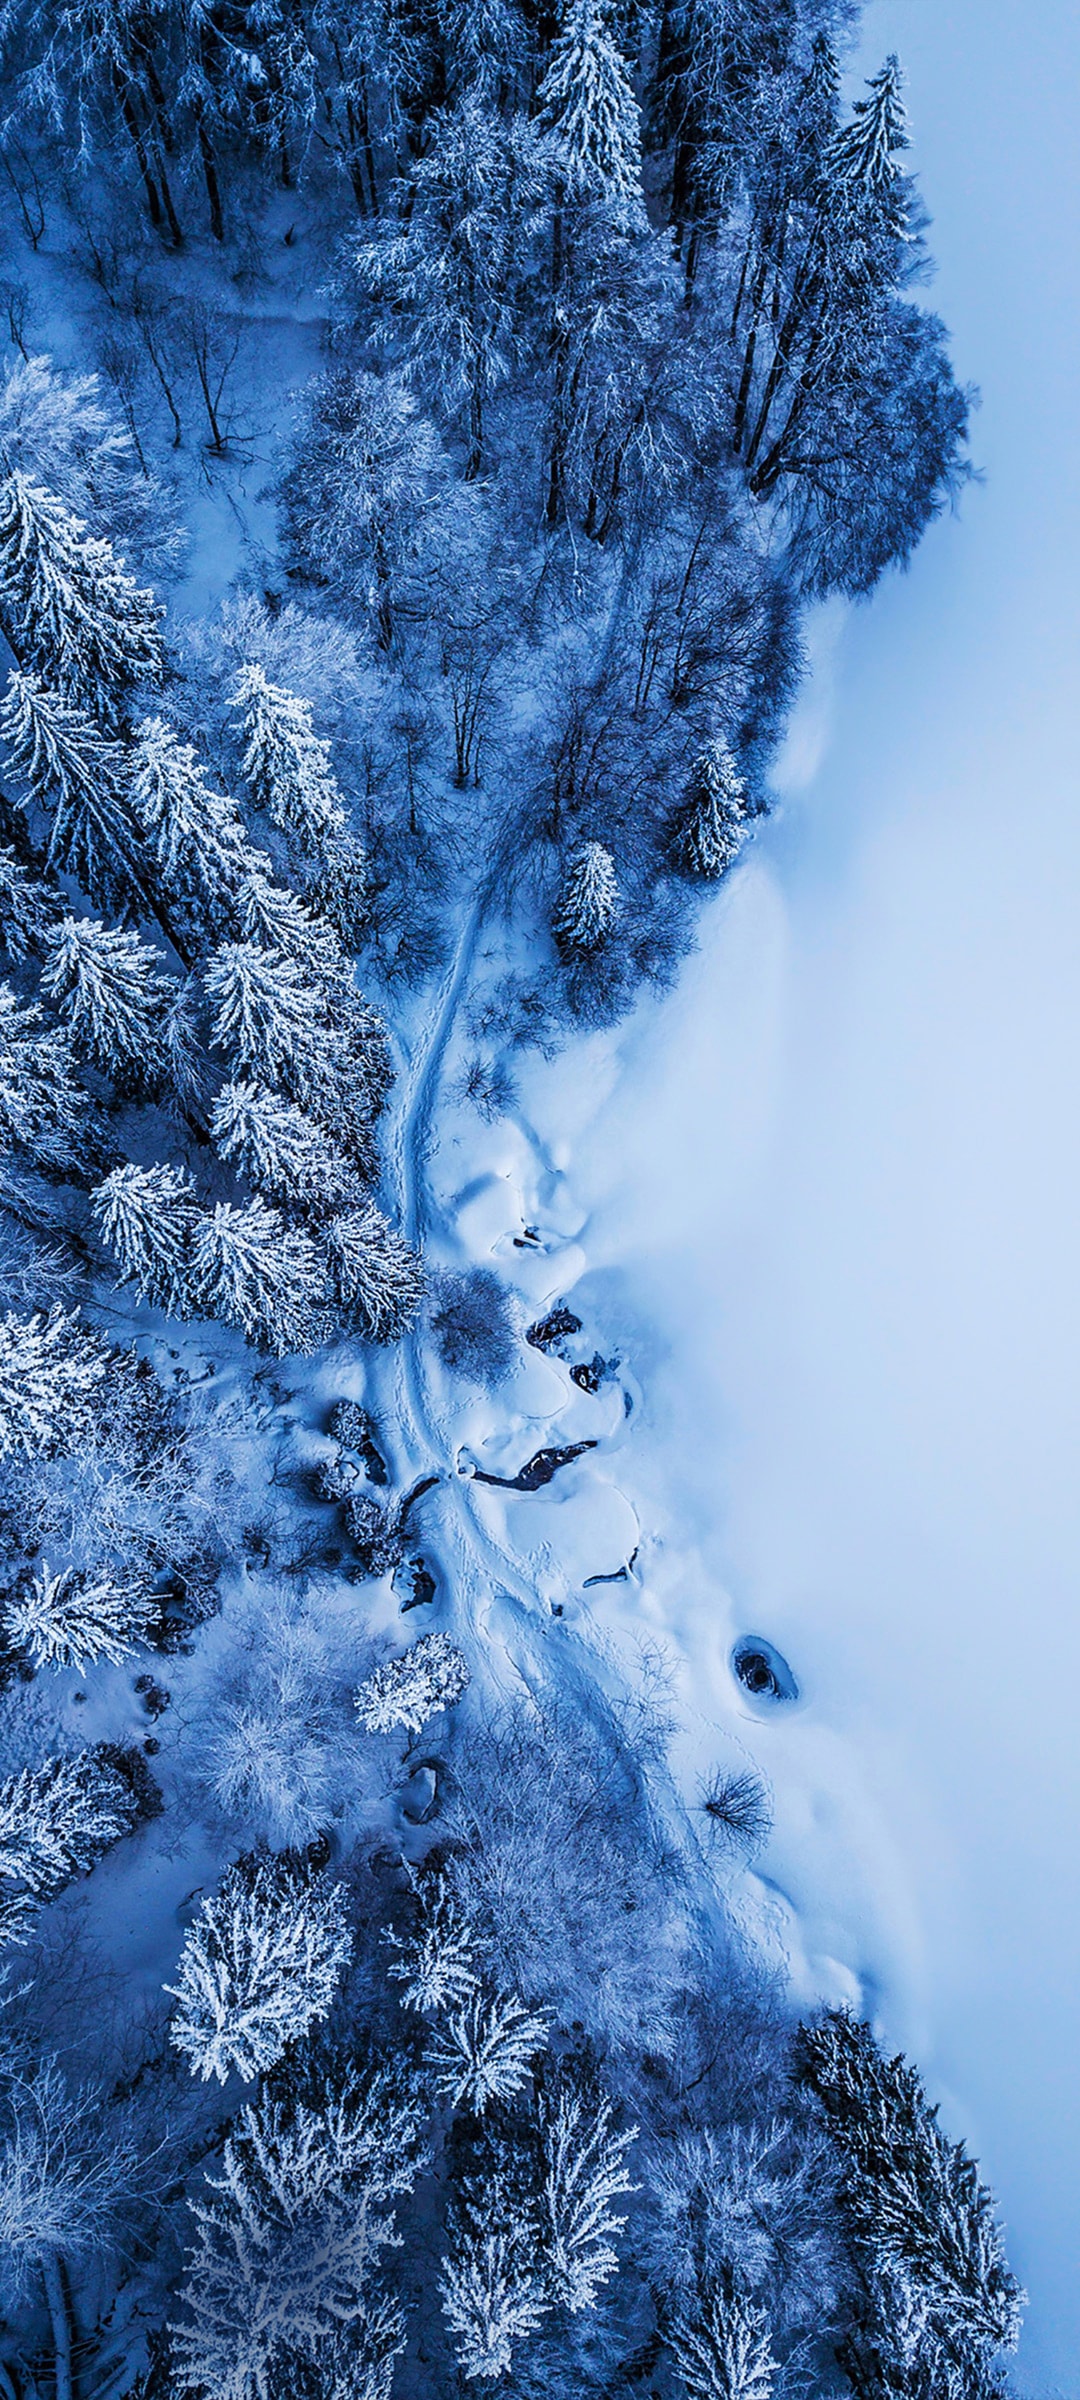 树林雪景组成冰雪世界鸟瞰风景